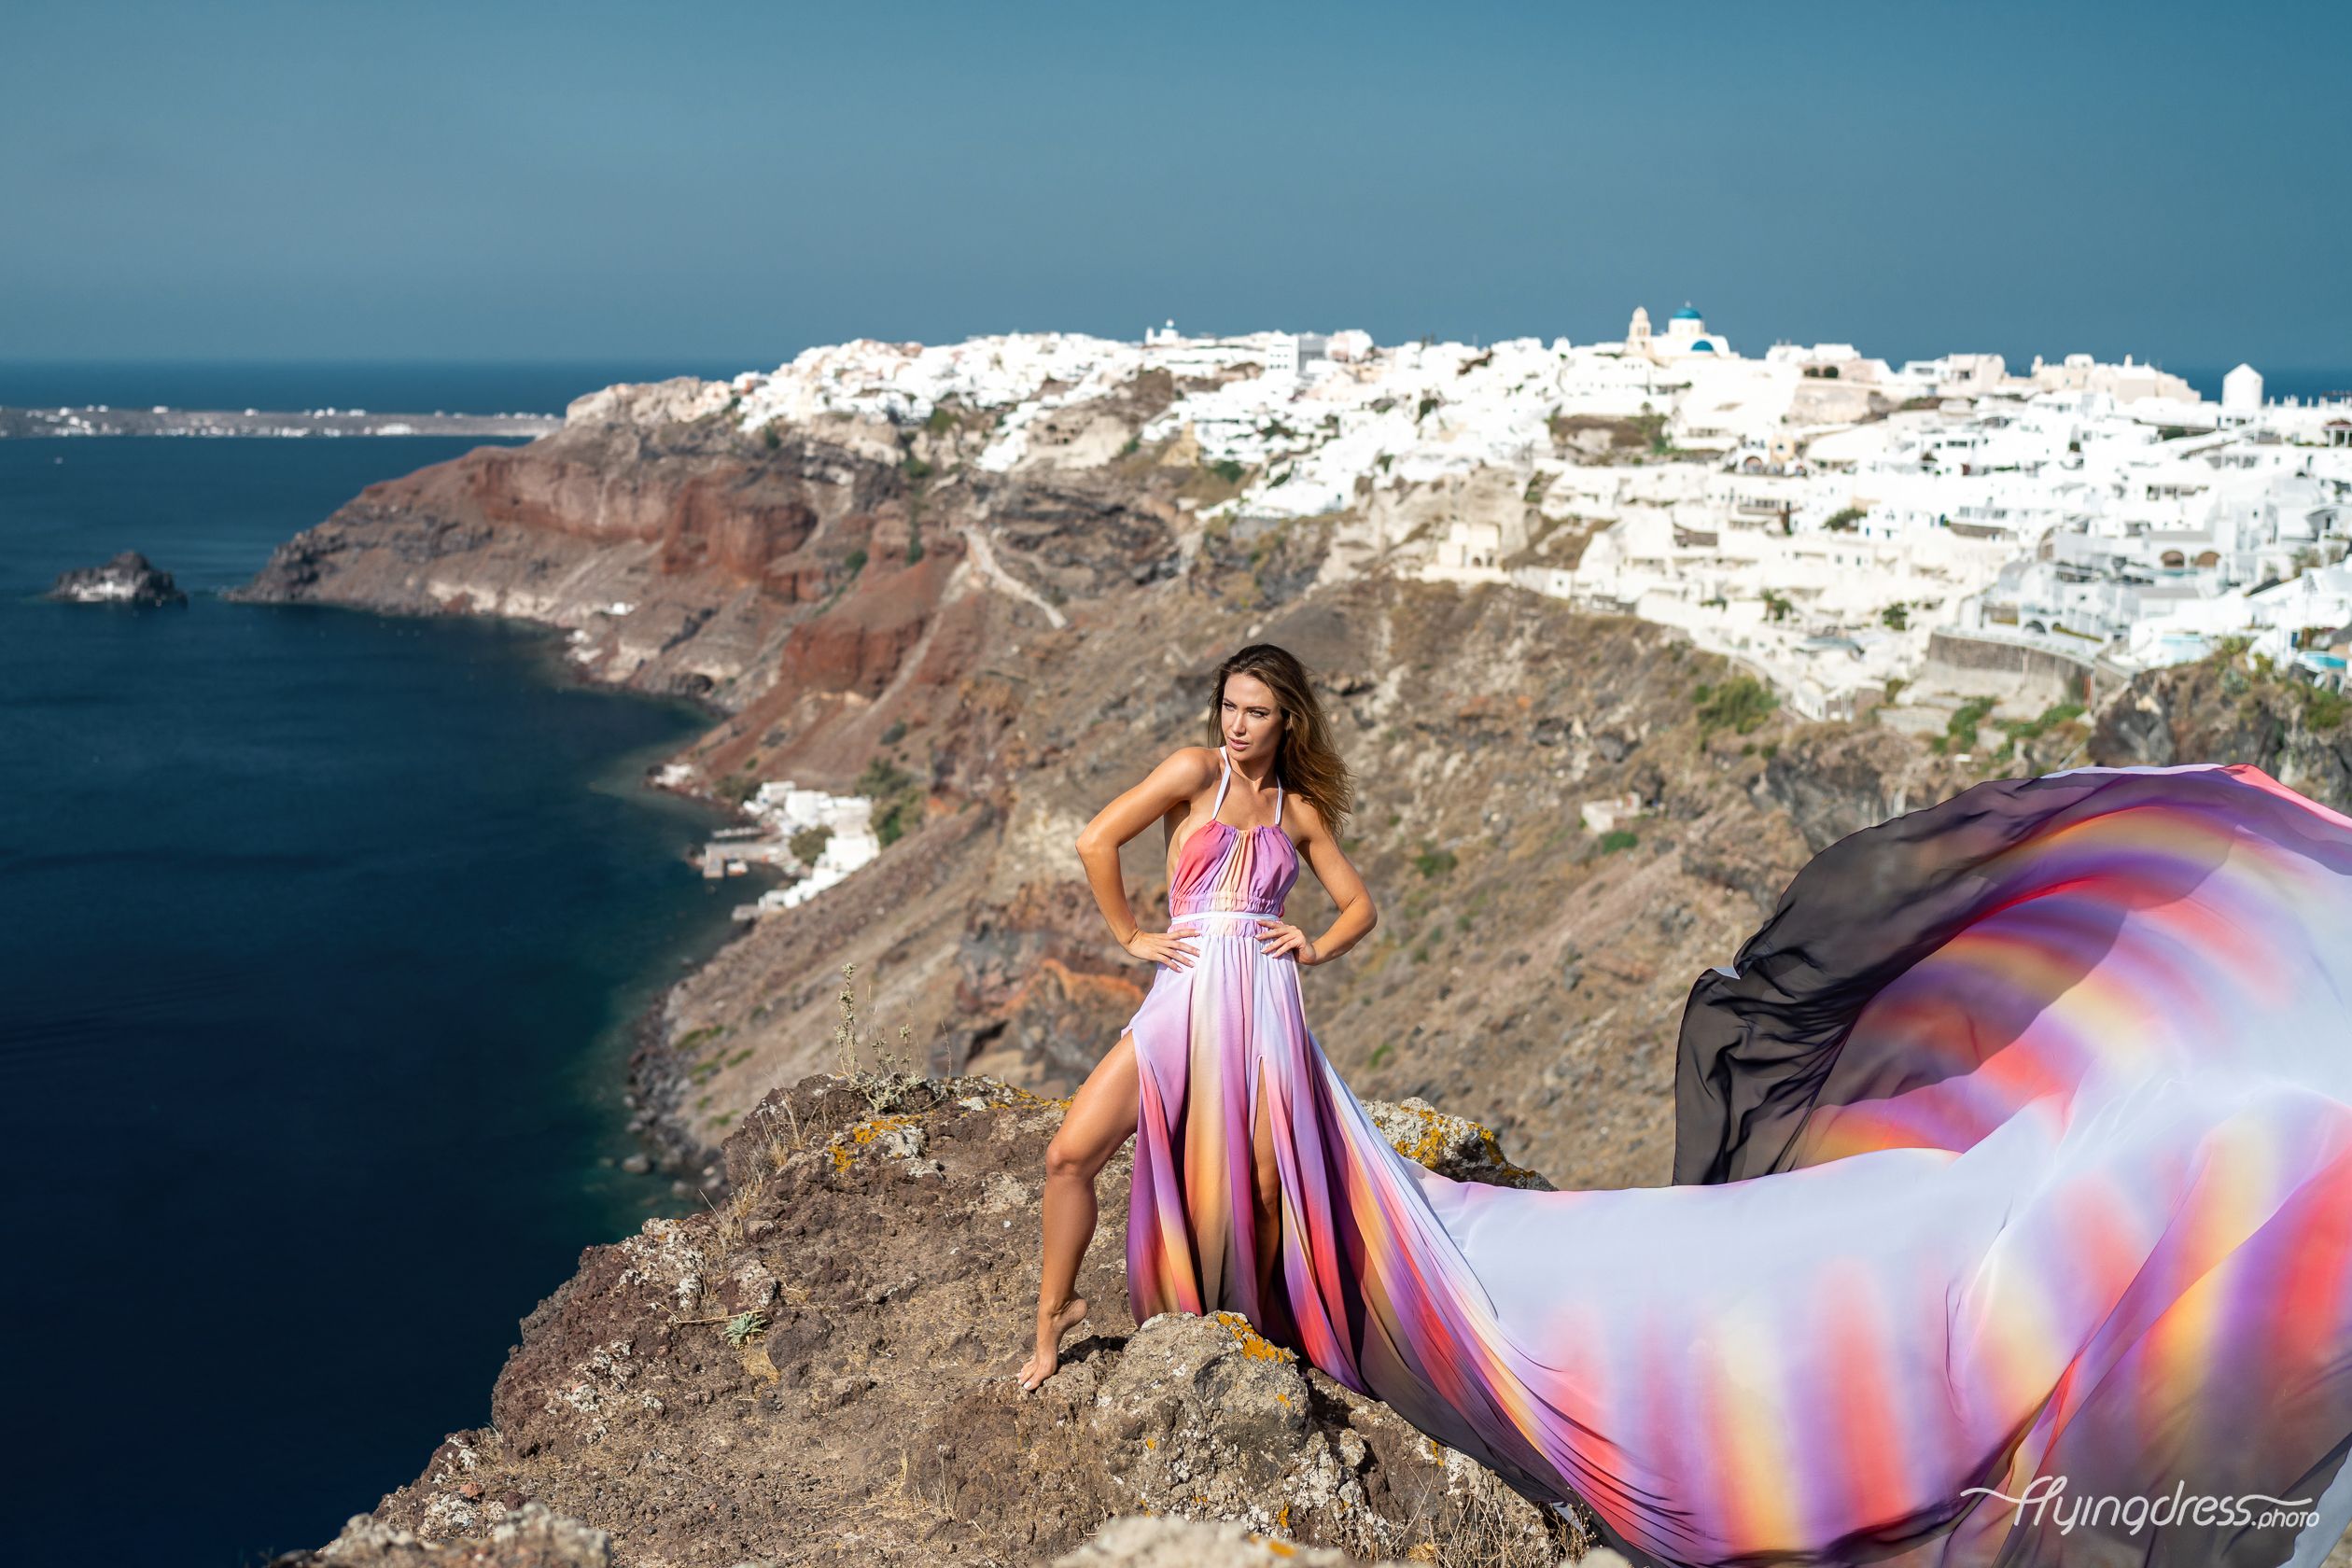 Flying dress shoot in Santorini, Greece